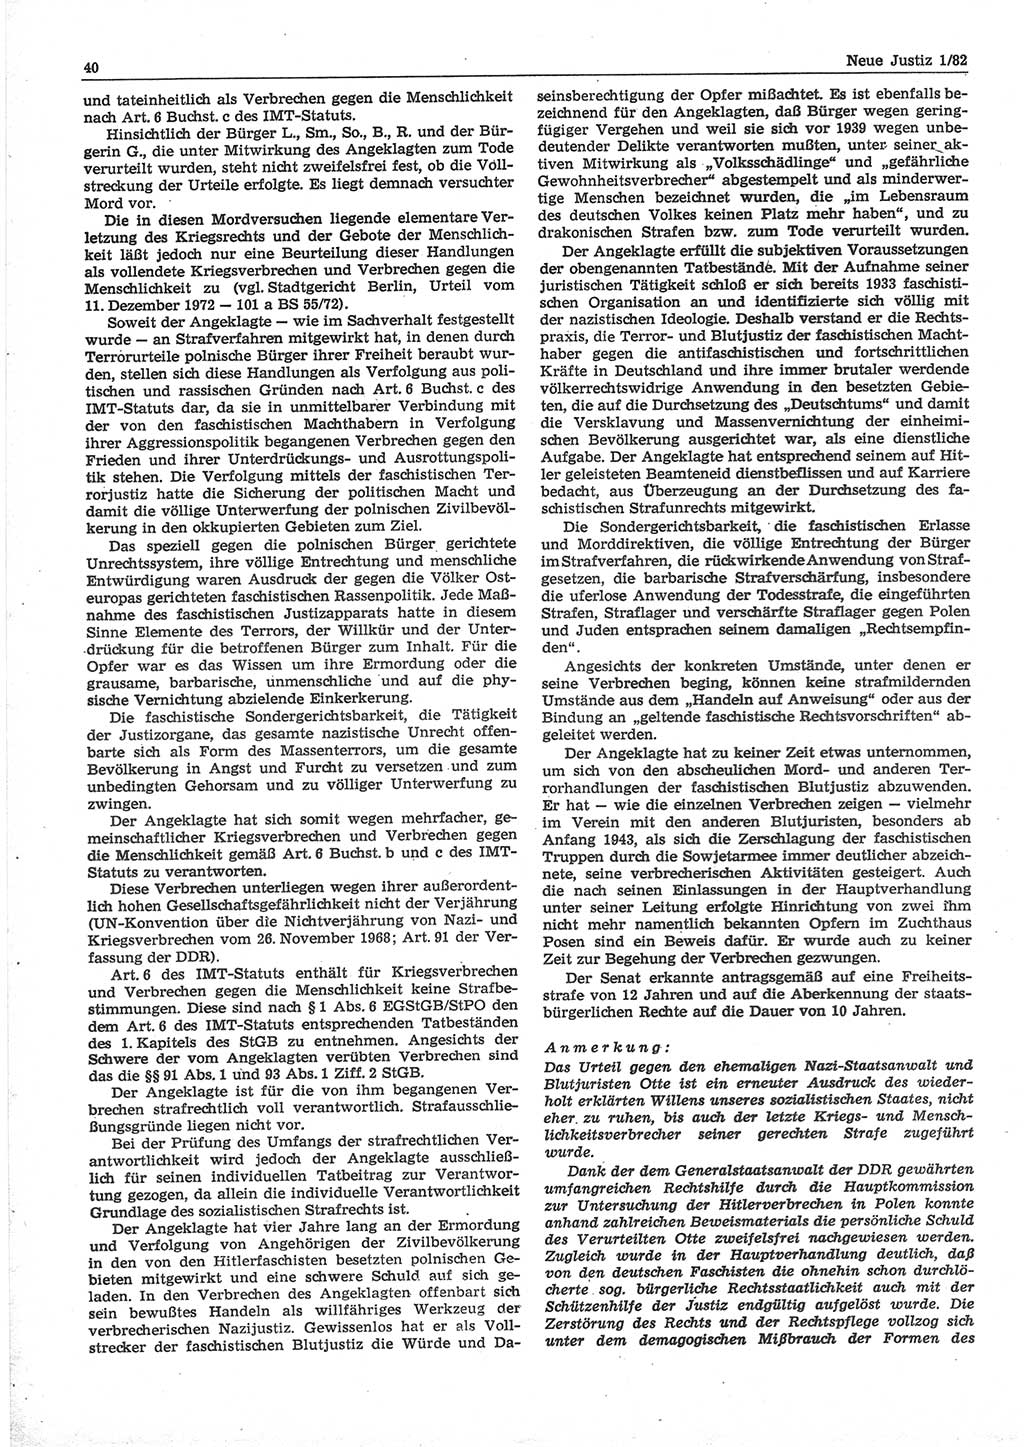 Neue Justiz (NJ), Zeitschrift für sozialistisches Recht und Gesetzlichkeit [Deutsche Demokratische Republik (DDR)], 36. Jahrgang 1982, Seite 40 (NJ DDR 1982, S. 40)